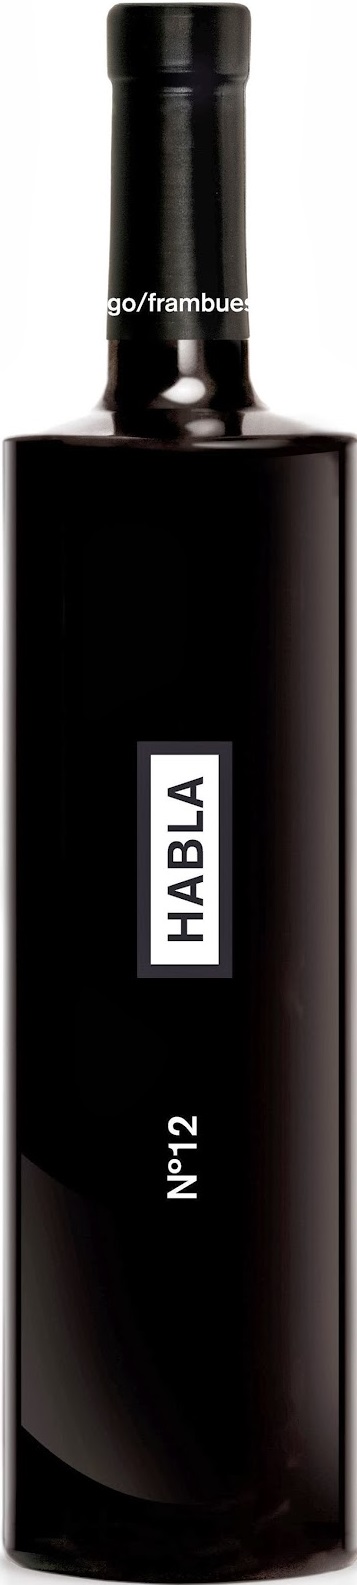 Logo Wine Habla nº 12